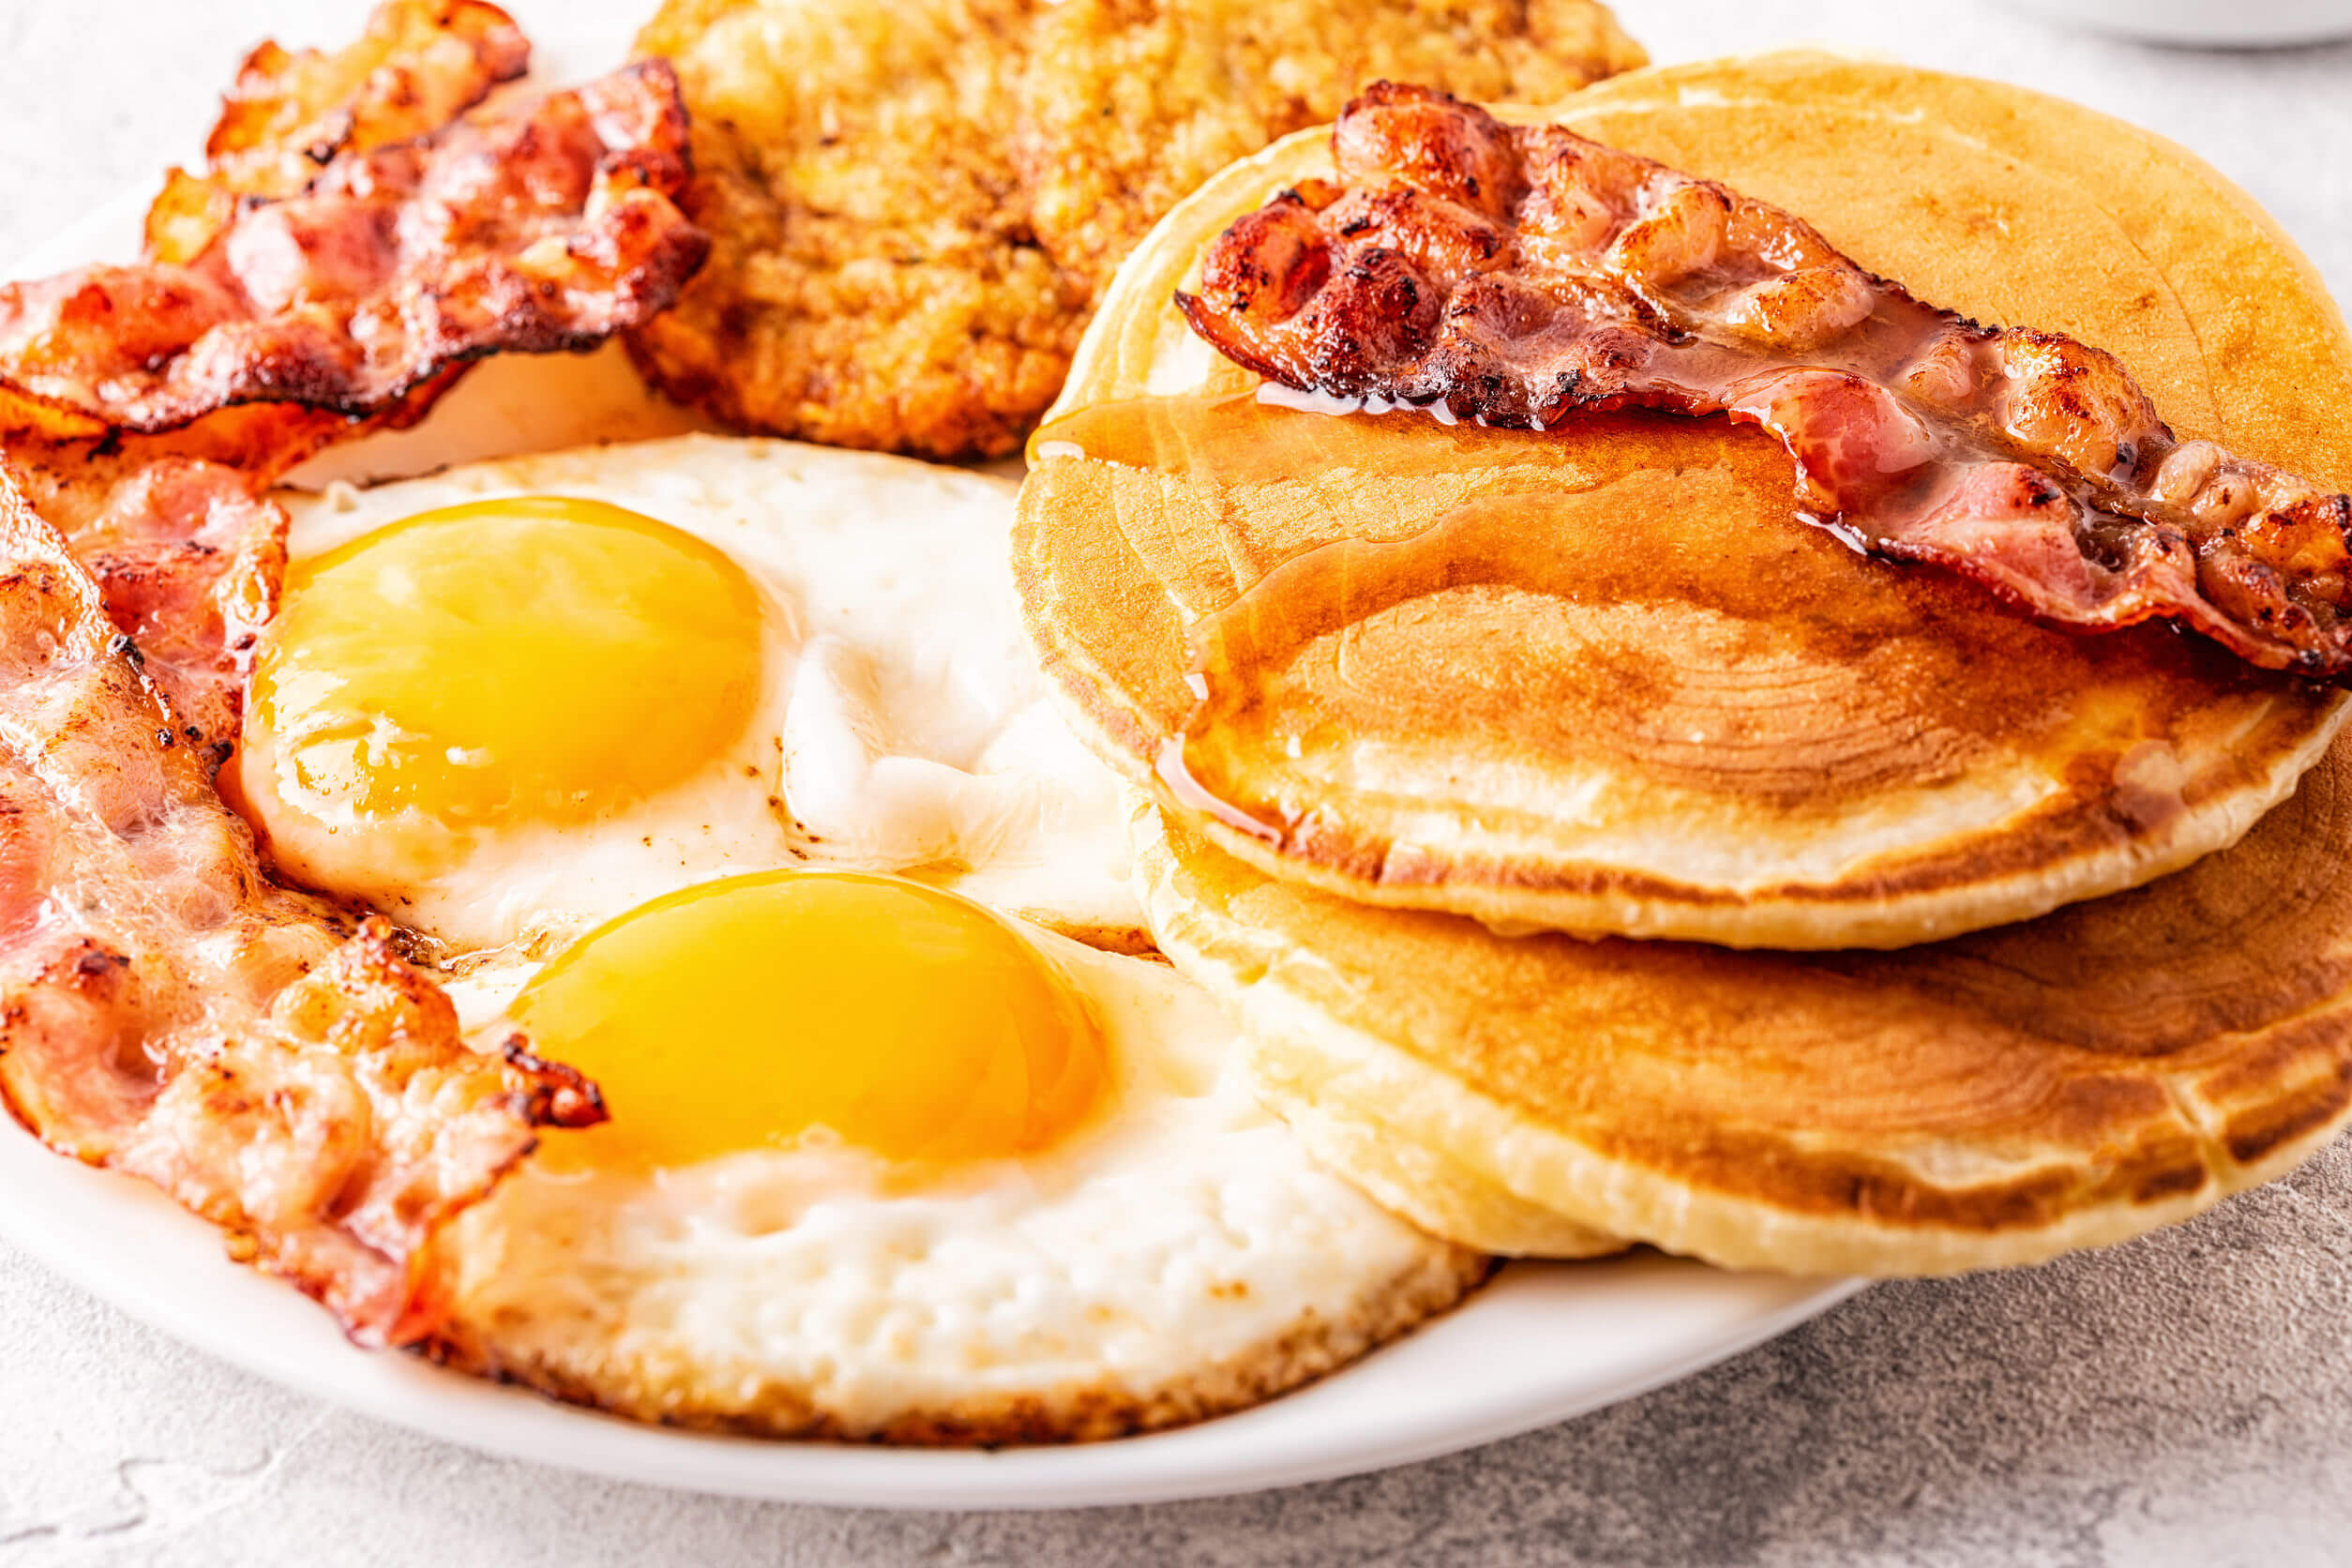 Se você vai pular refeições é melhor escolher o café da manhã